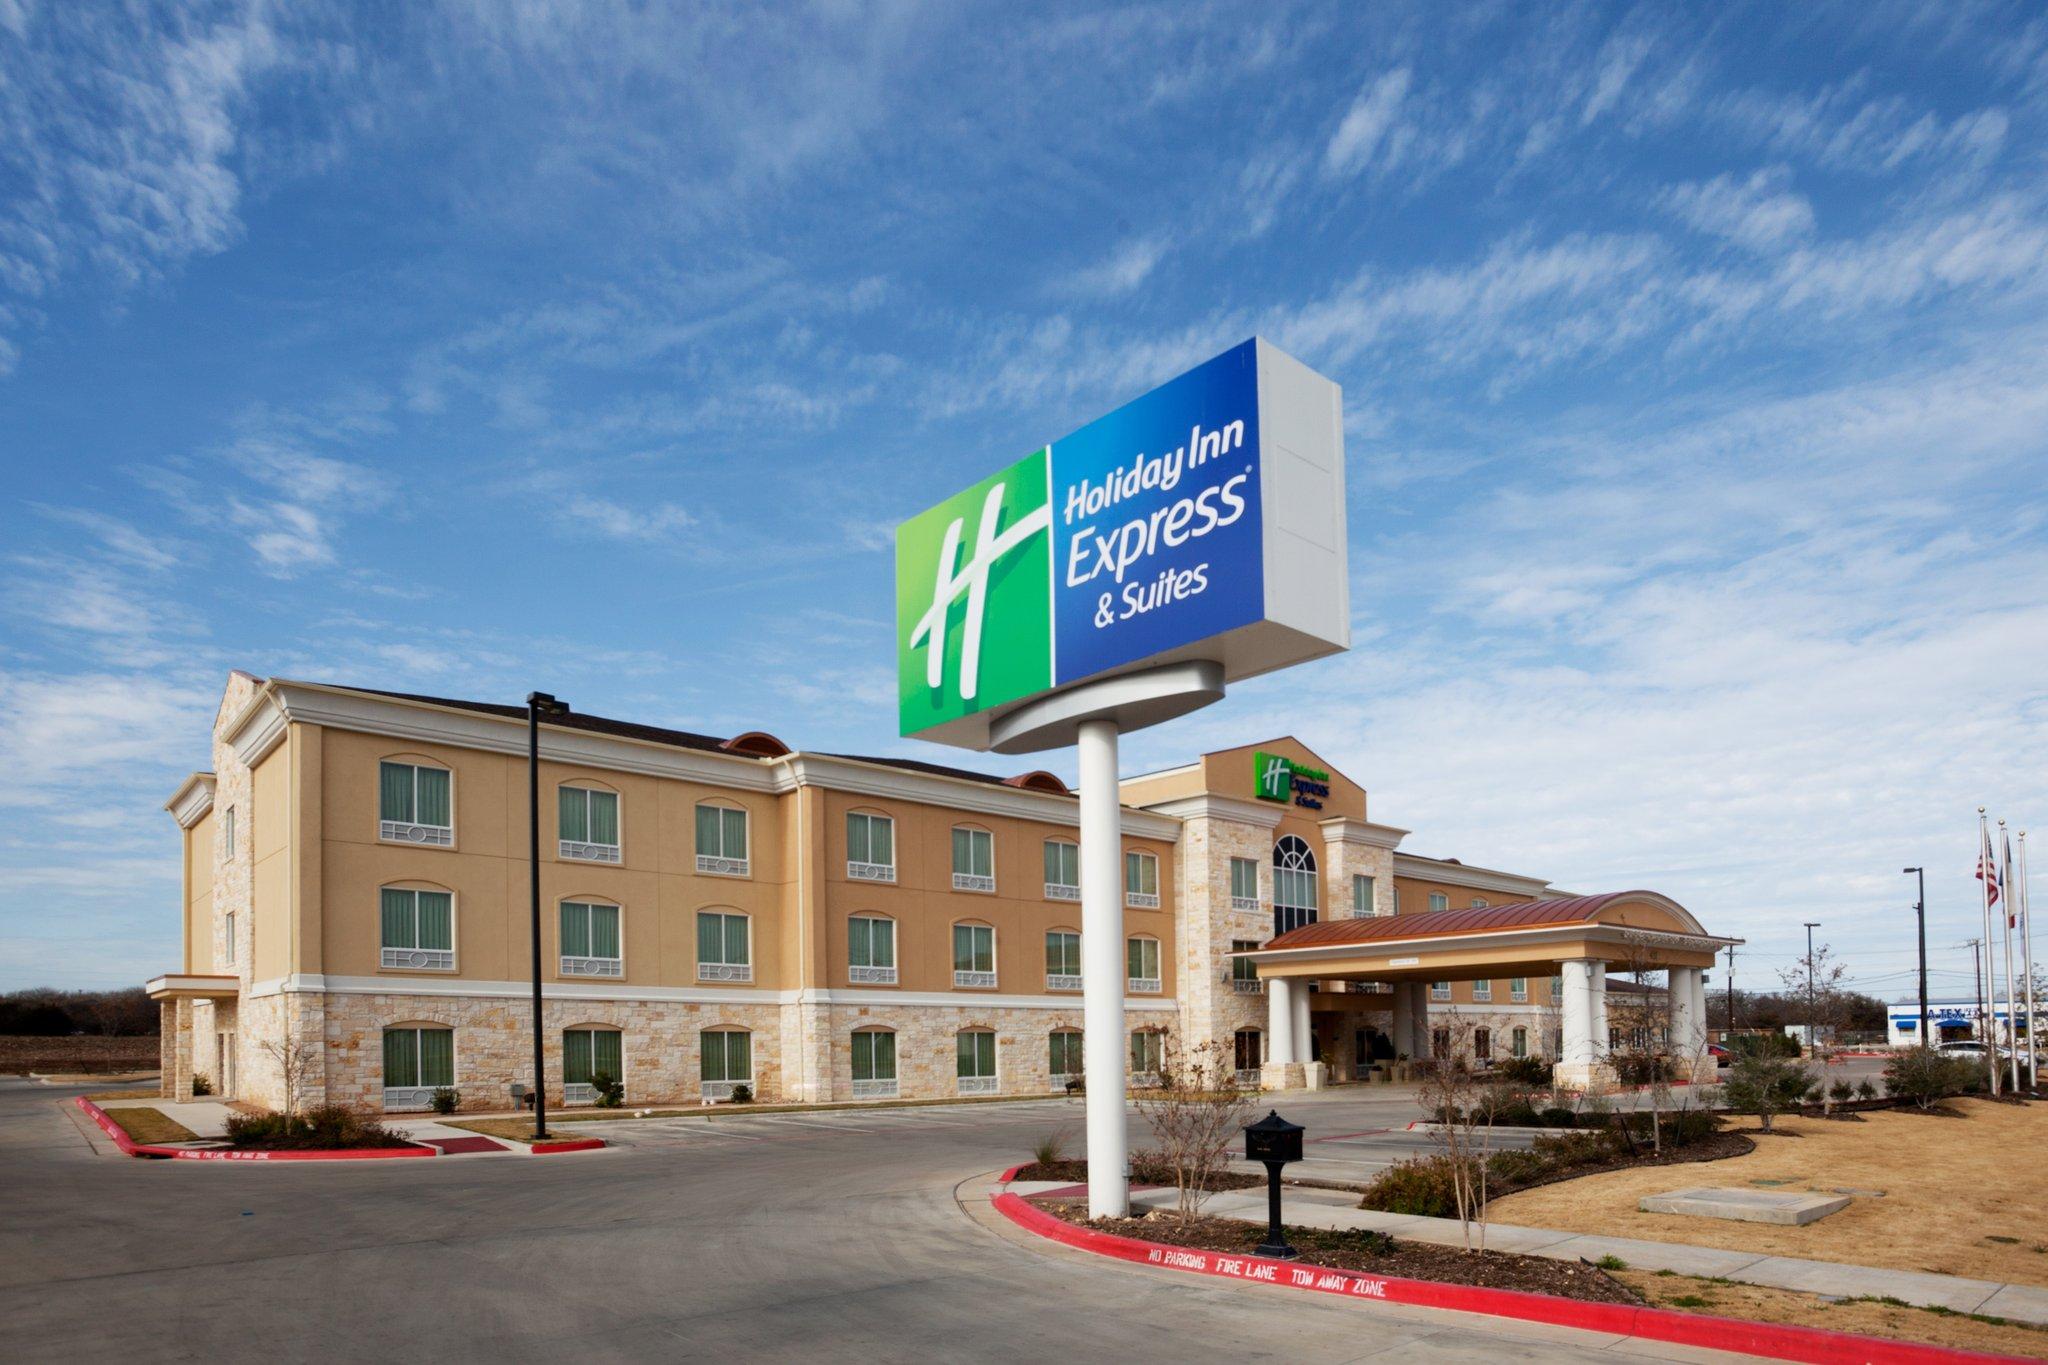 Holiday Inn Express & Suites - Georgetown in Georgetown, TX